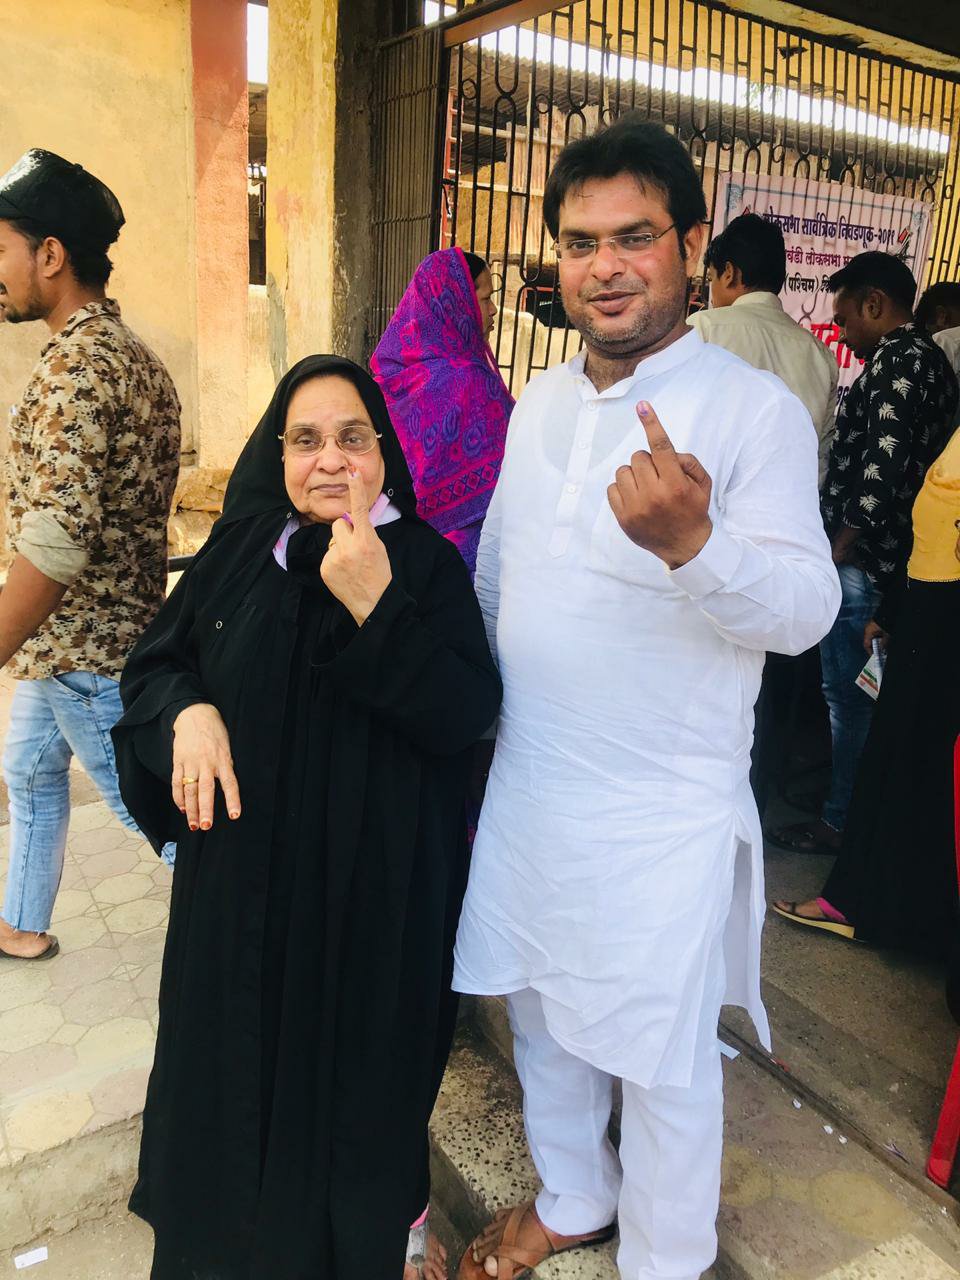 भिवंडी लोकसभा क्षेत्र में शांतिपूर्ण ढंग से 52.43 फीसदी हुआ मतदान, लगभग डेढ़ दर्जन ईवीएम हुए खराब, शादी से पहले एक जोड़े ने किया मतदान | New India Times